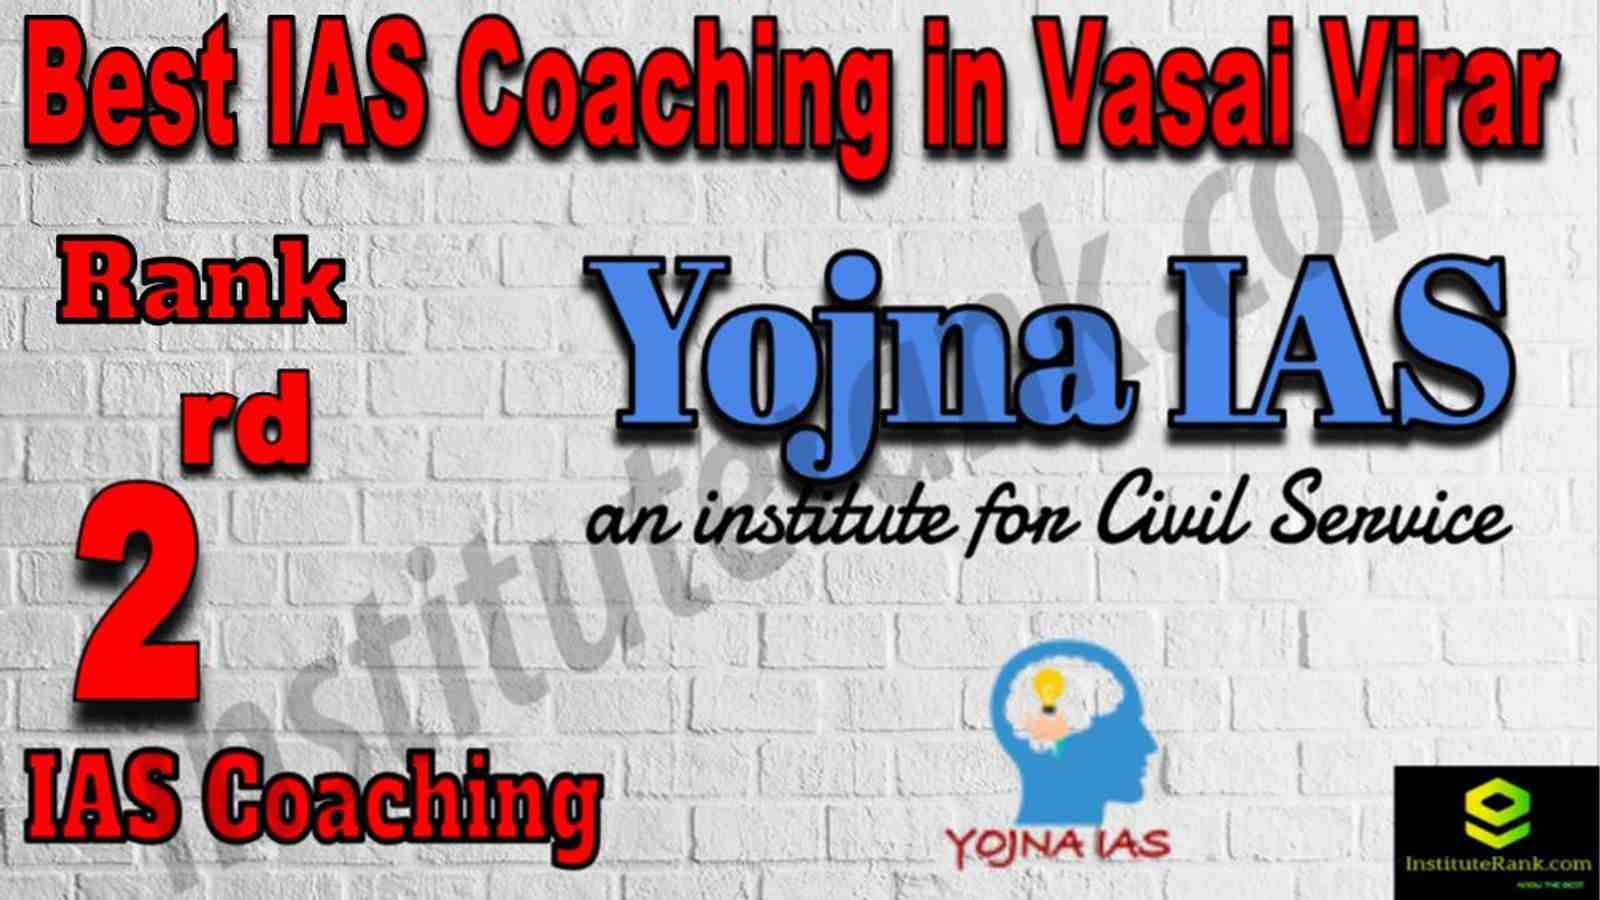 2nd Best IAS Coaching in Vasai Virar